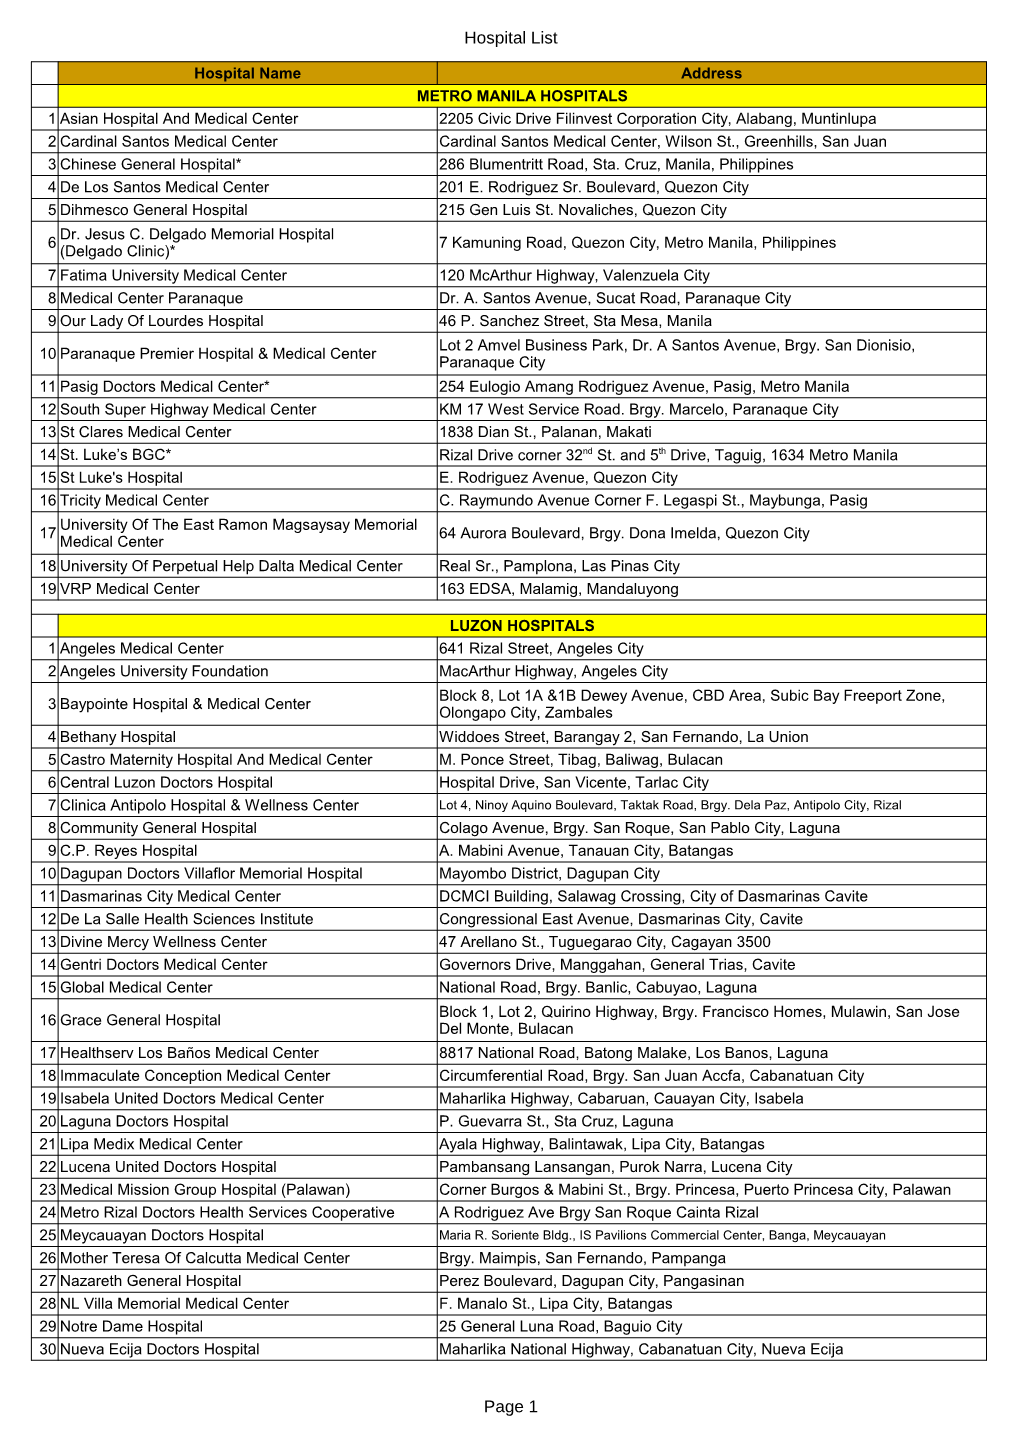 Hospital List Page 1